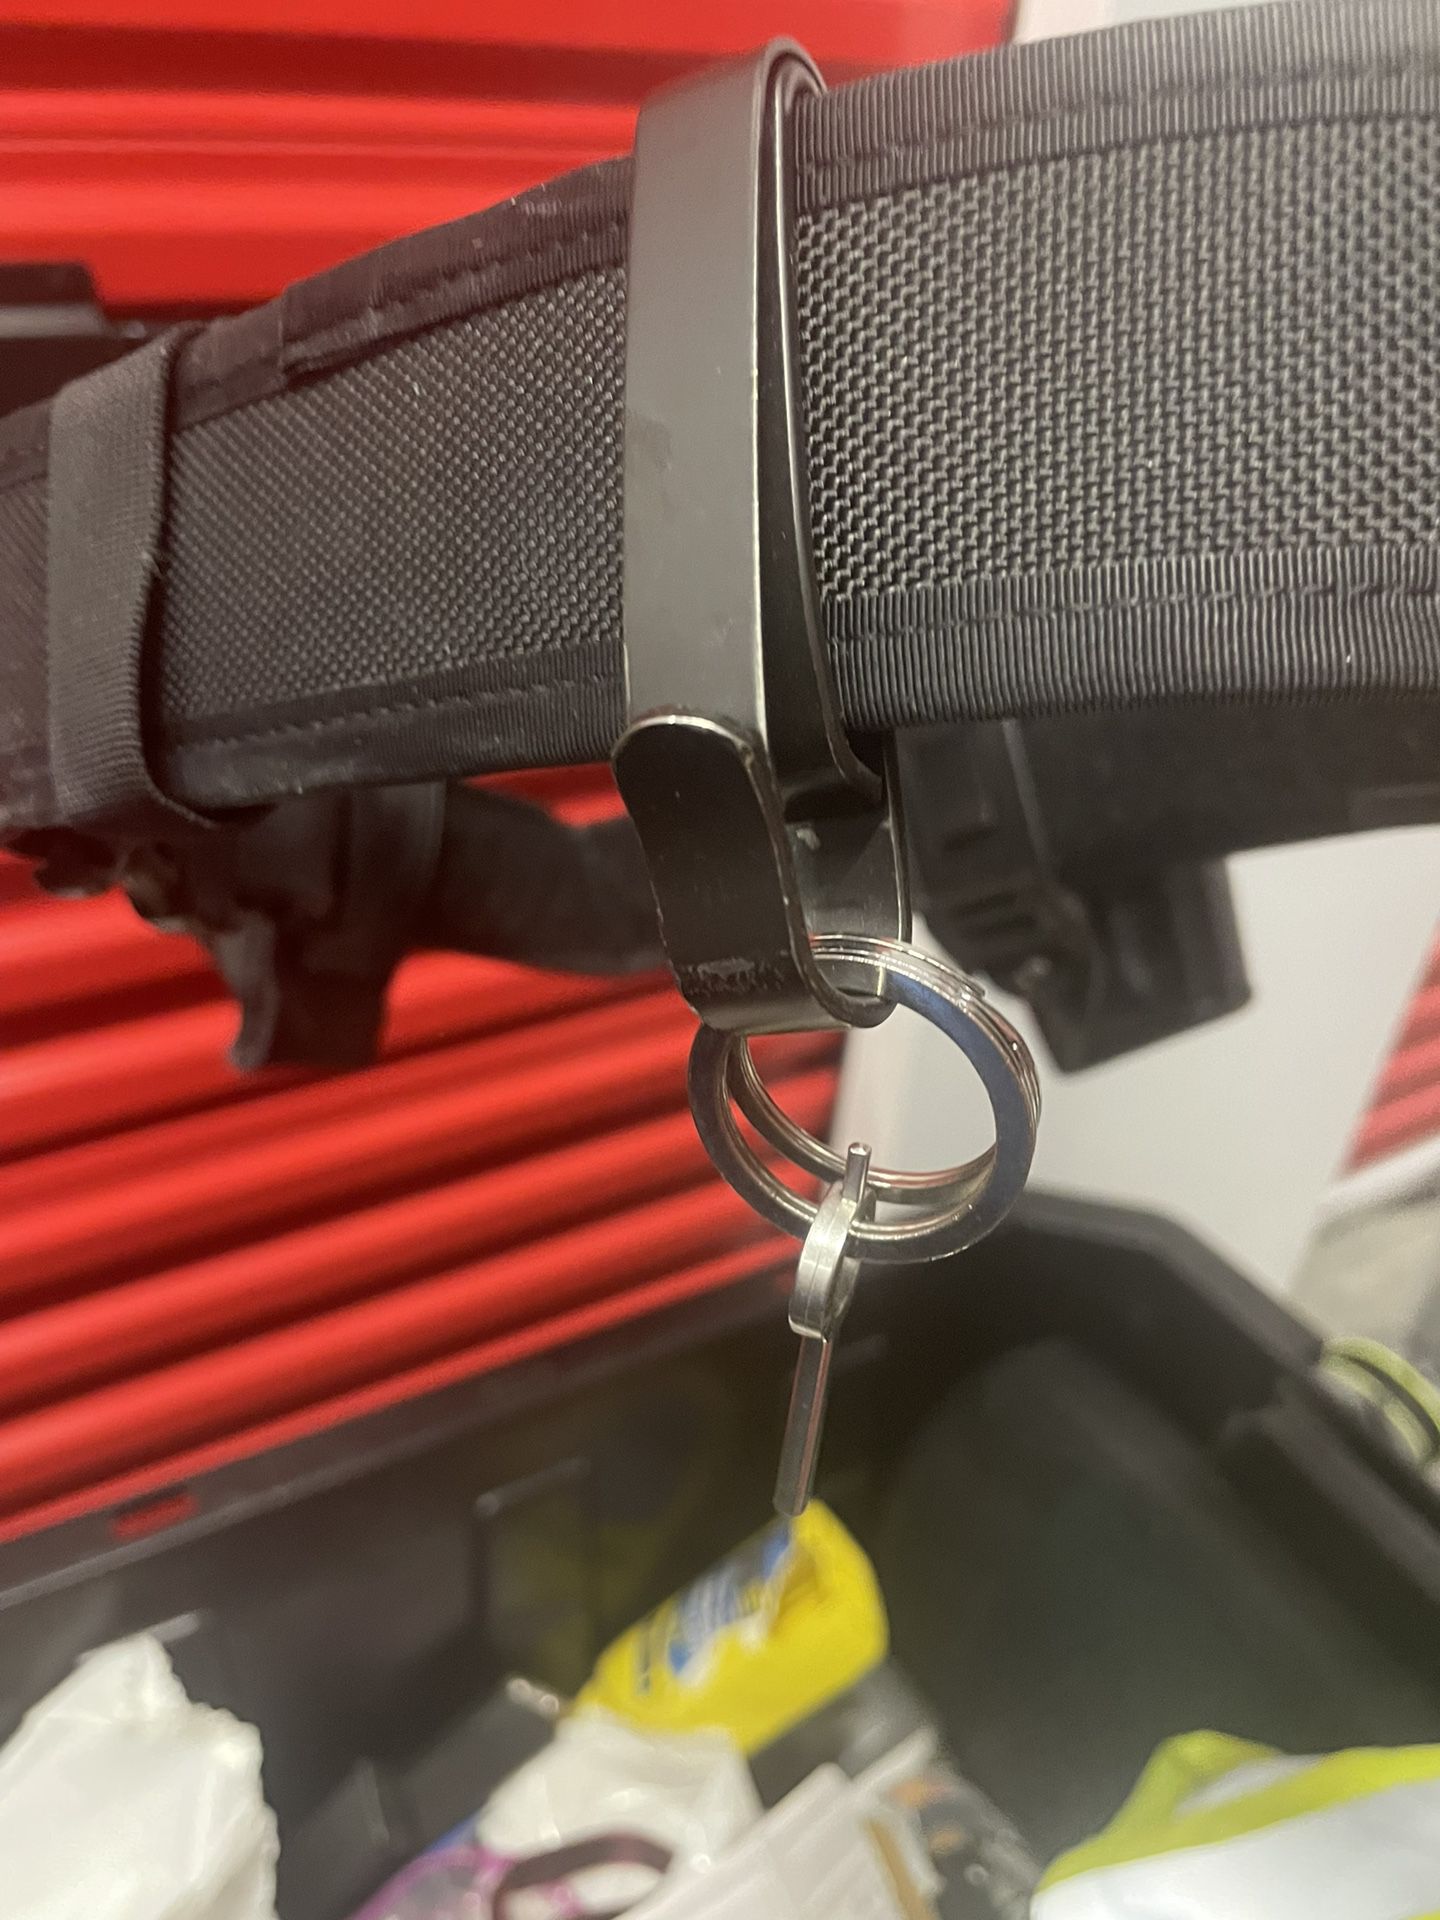 ZAK tool Keychain holder for duty belt